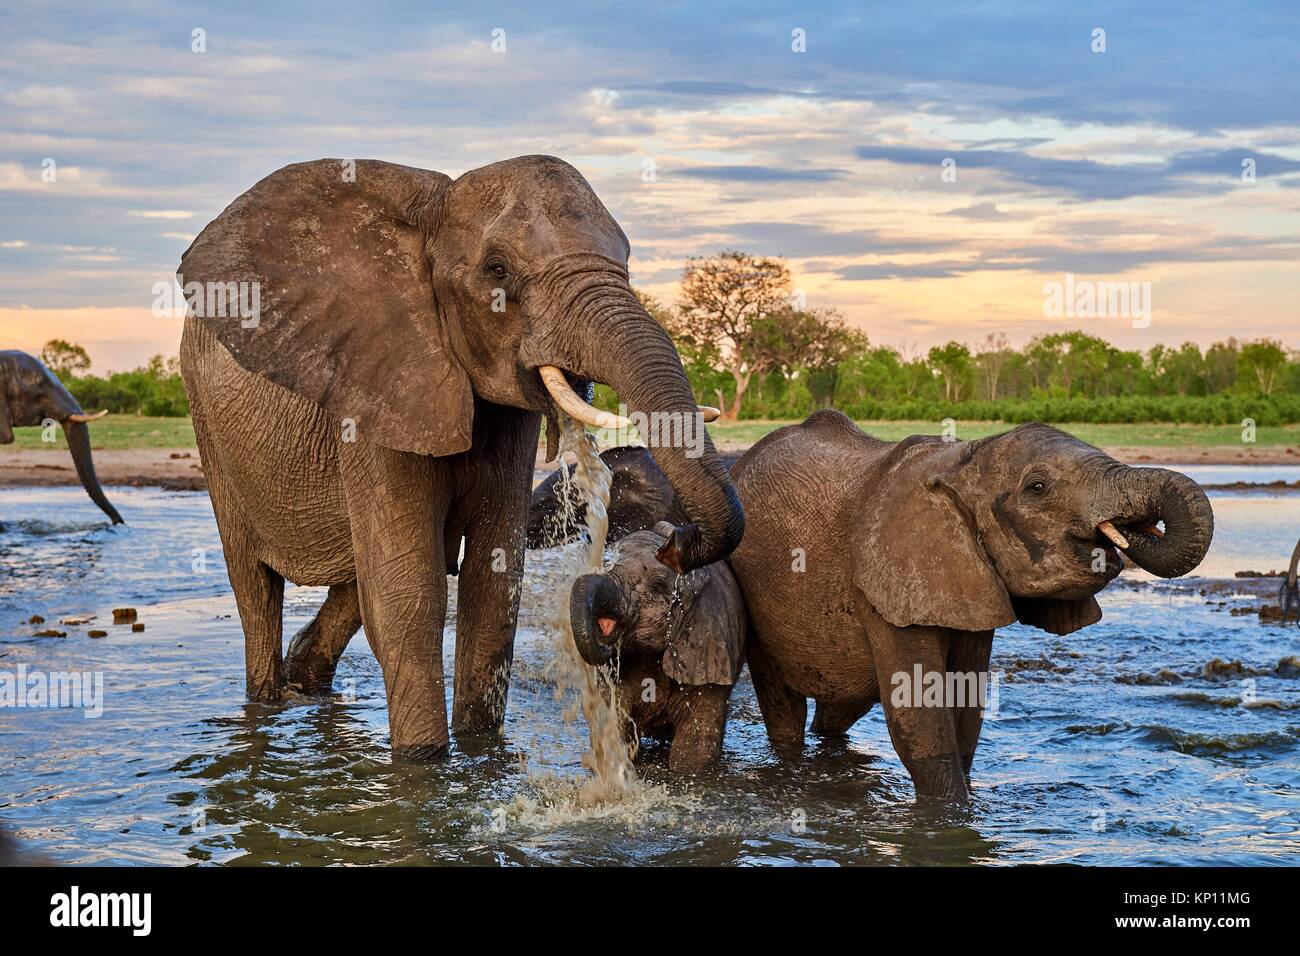 Grupo de elefante africano (Loxodonta africana), bebiendo en una watehole. La madre y el ternero, el Parque Nacional de Hwange (Zimbabwe). Foto de stock